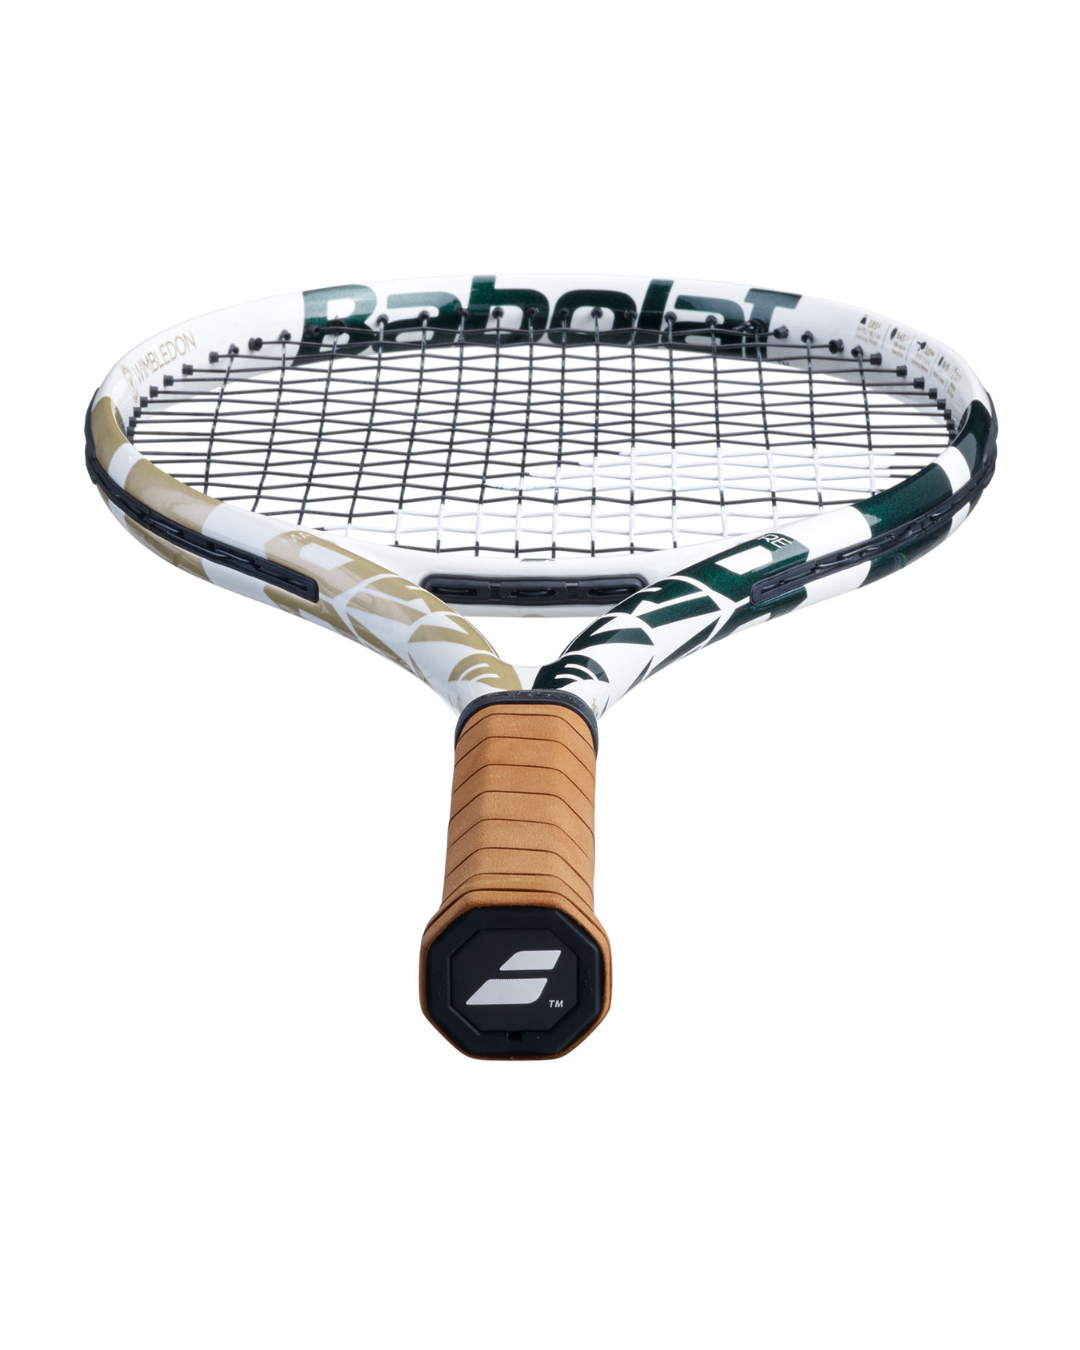 Babolat Pure Drive Team Wimbledon 2022 Tennisketcher